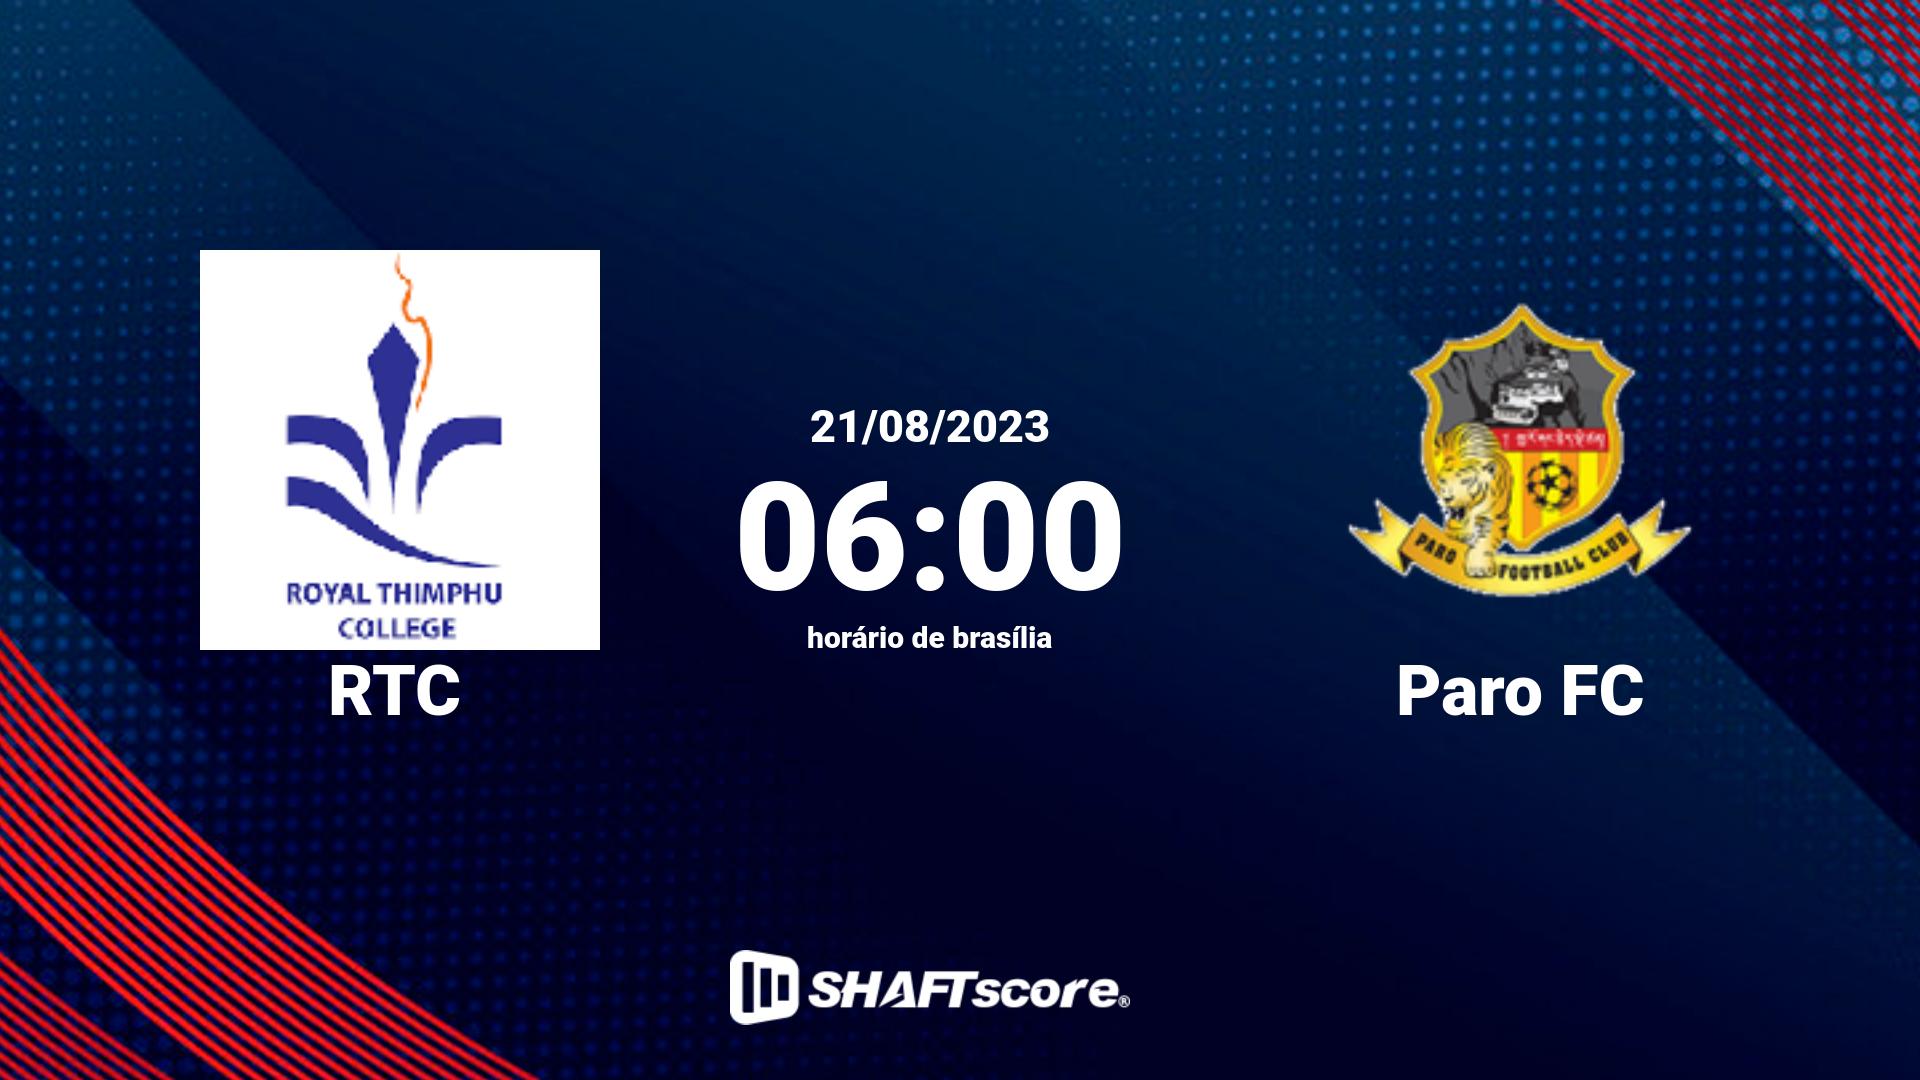 Estatísticas do jogo RTC vs Paro FC 21.08 06:00